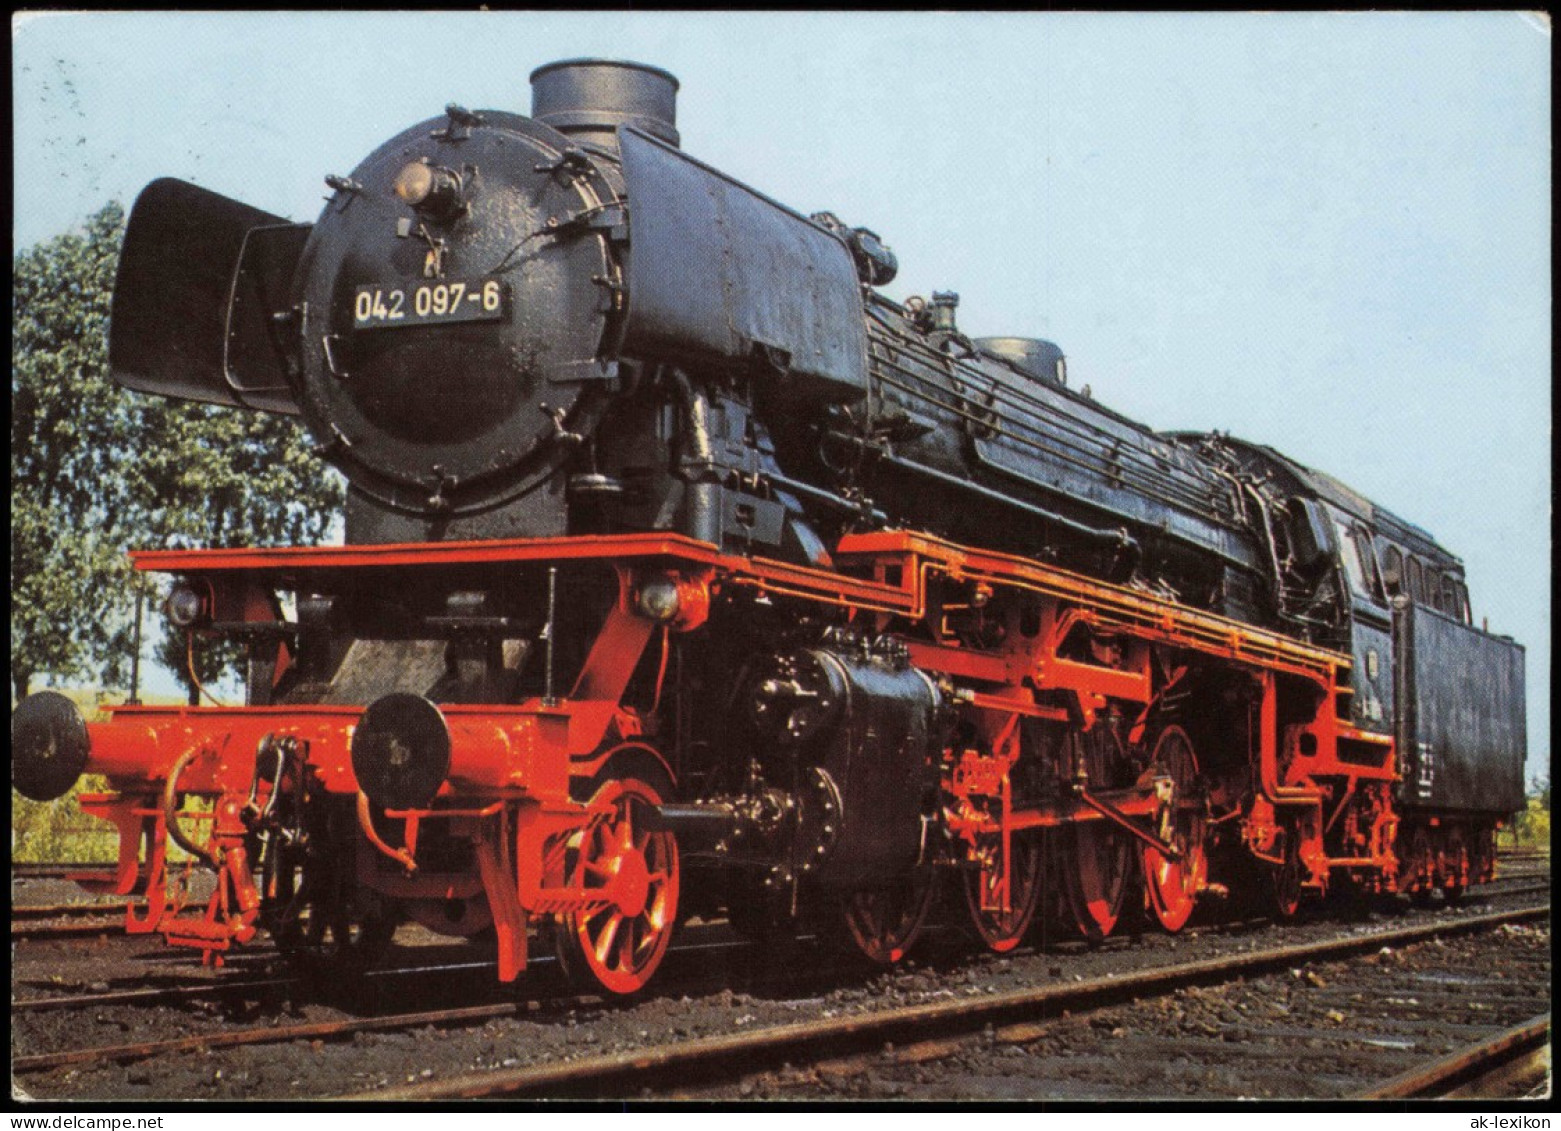 Eisenbahn Dampflokomotive Baureihe 042 Güterzuglokomotive Mit Ölfeuerung 1975 - Eisenbahnen